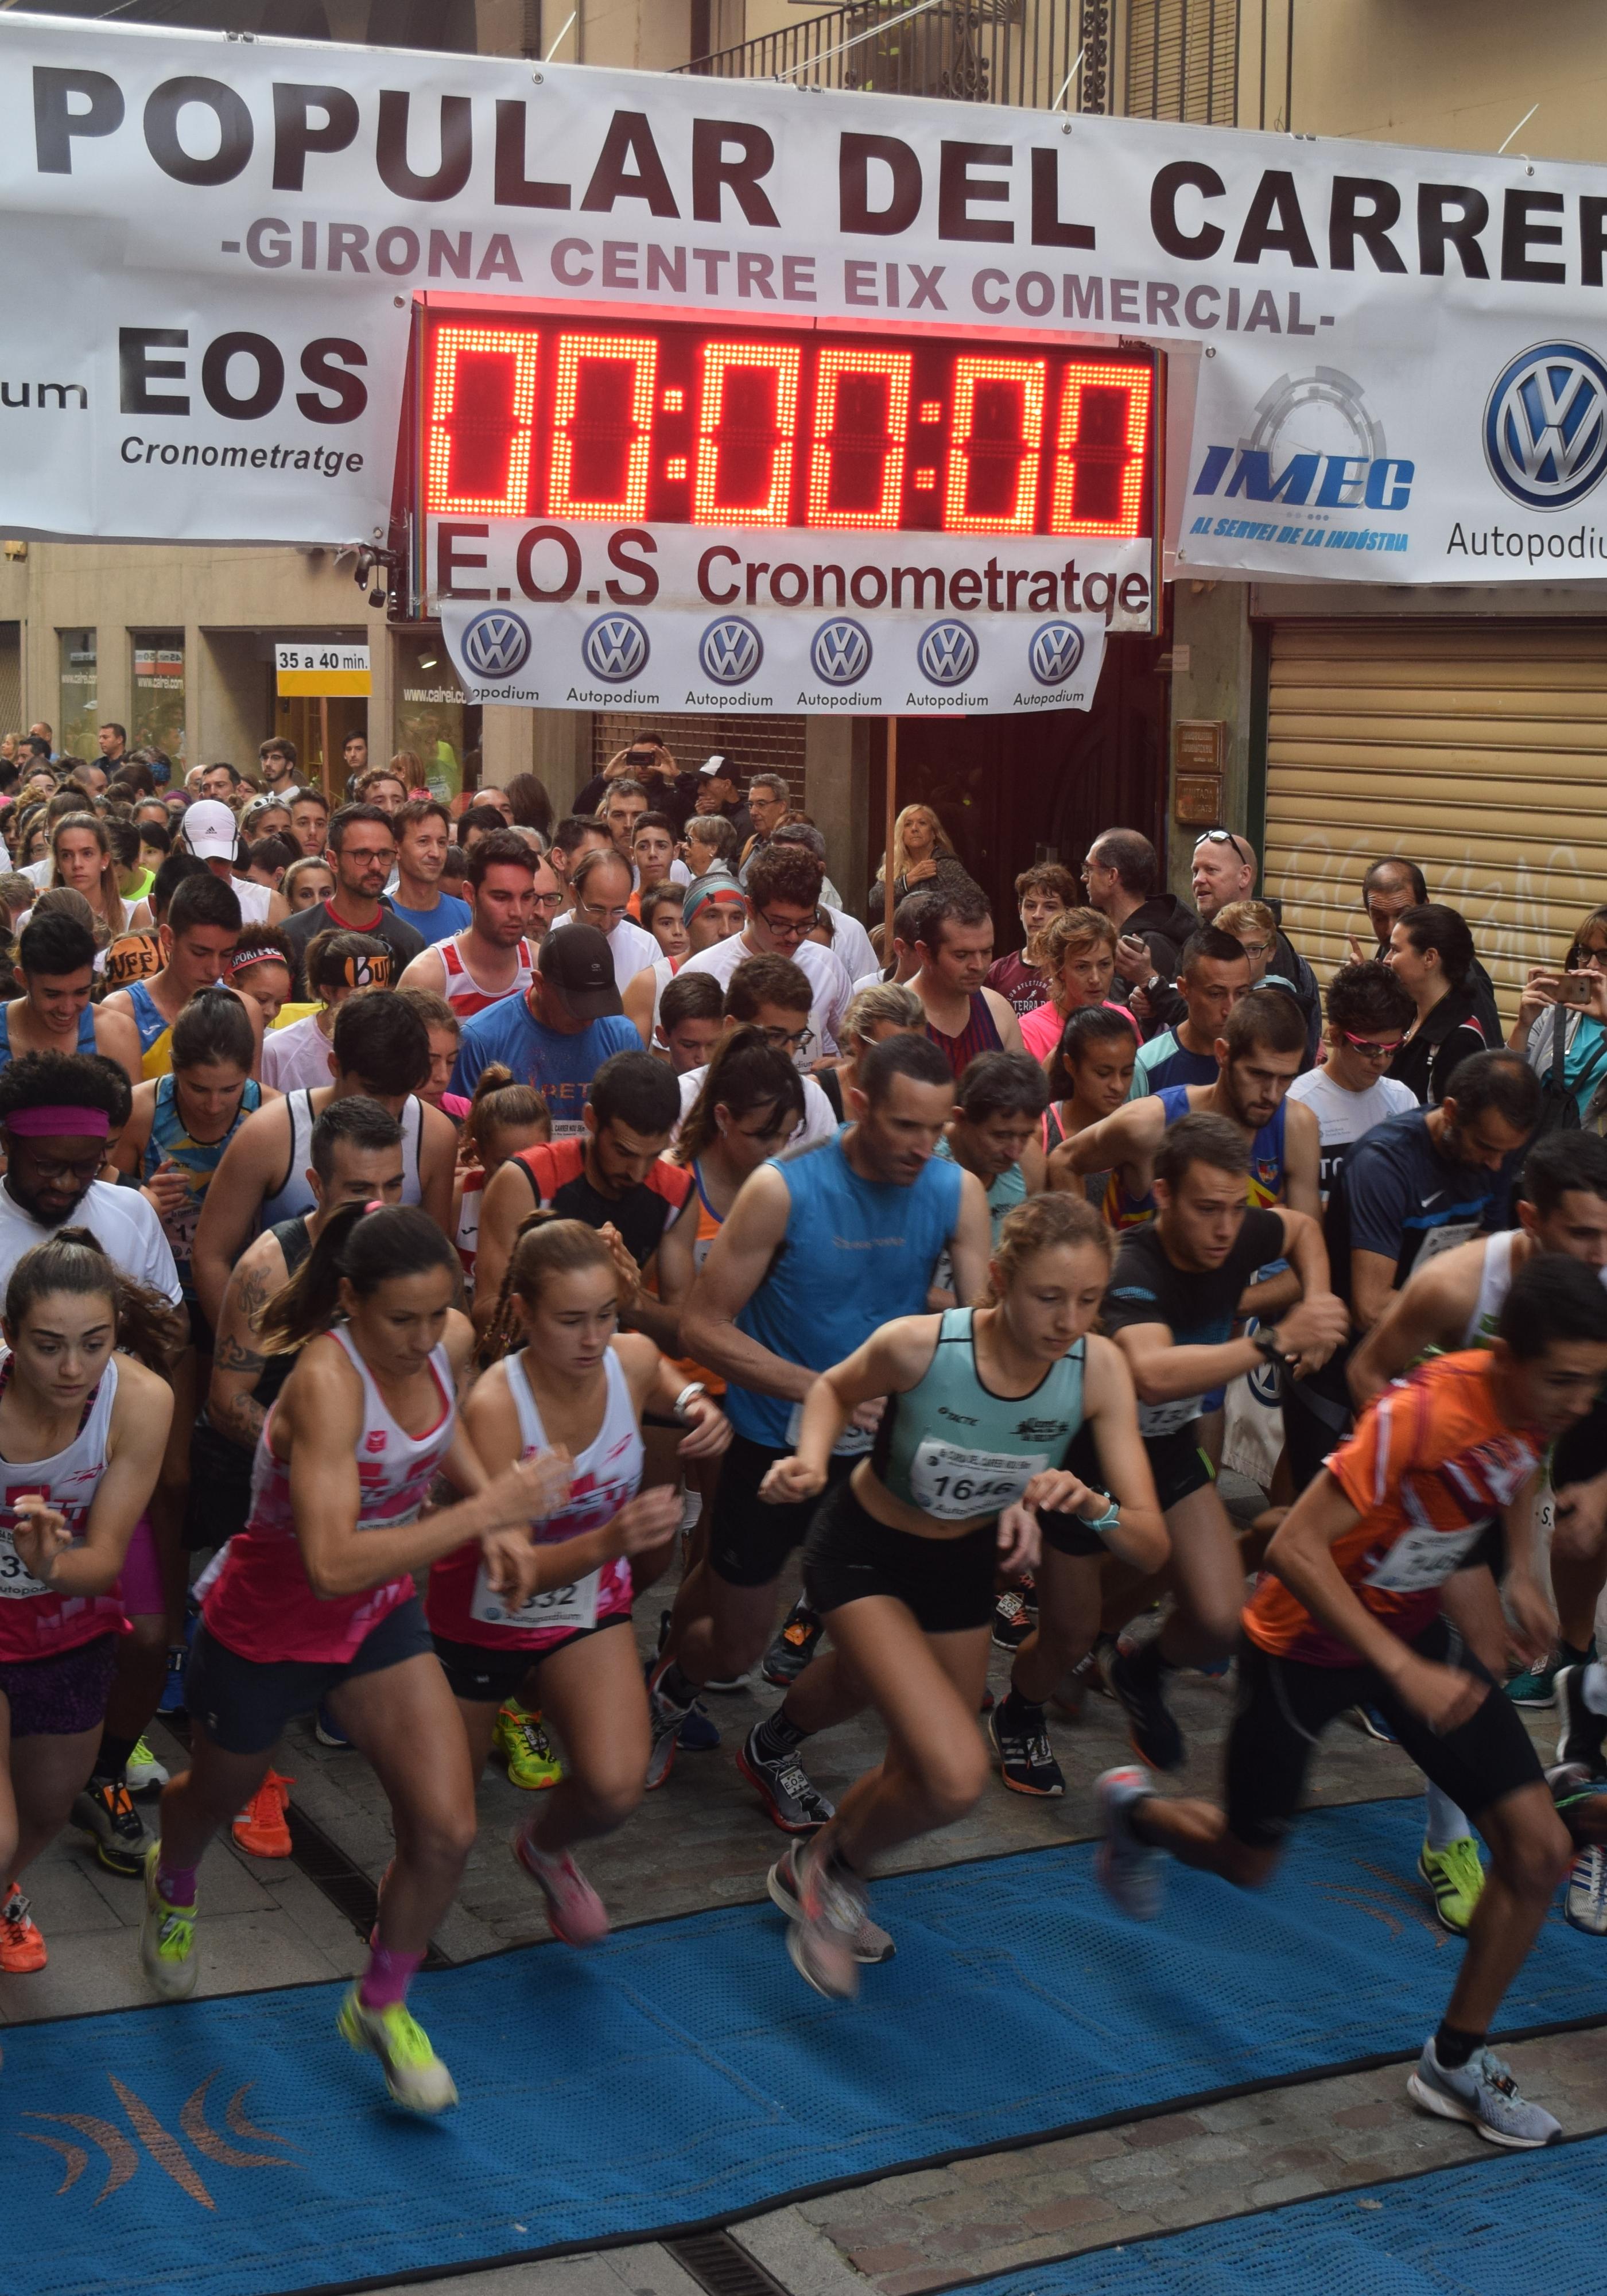 La cursa popular del carrer Nou de Girona recupera la 42a edició el diumenge 17 d’octubre